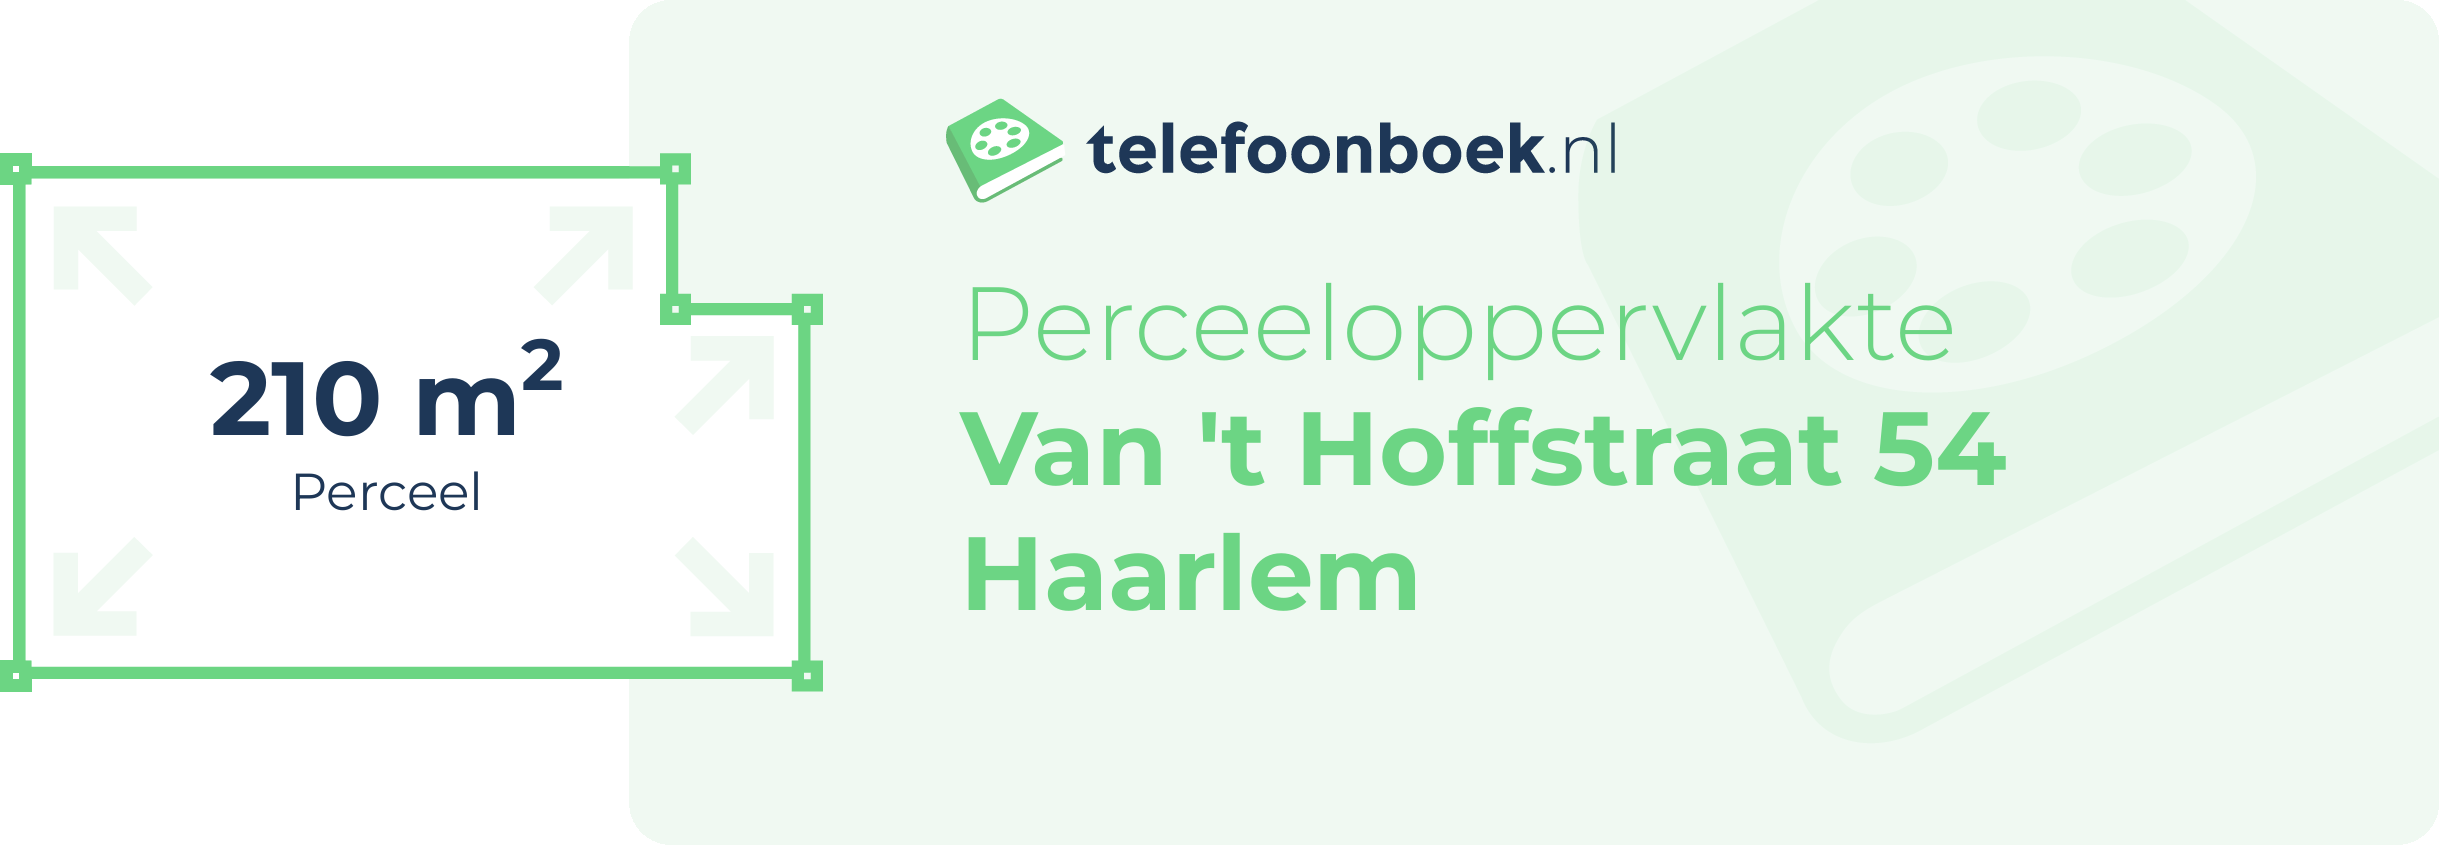 Perceeloppervlakte Van 't Hoffstraat 54 Haarlem